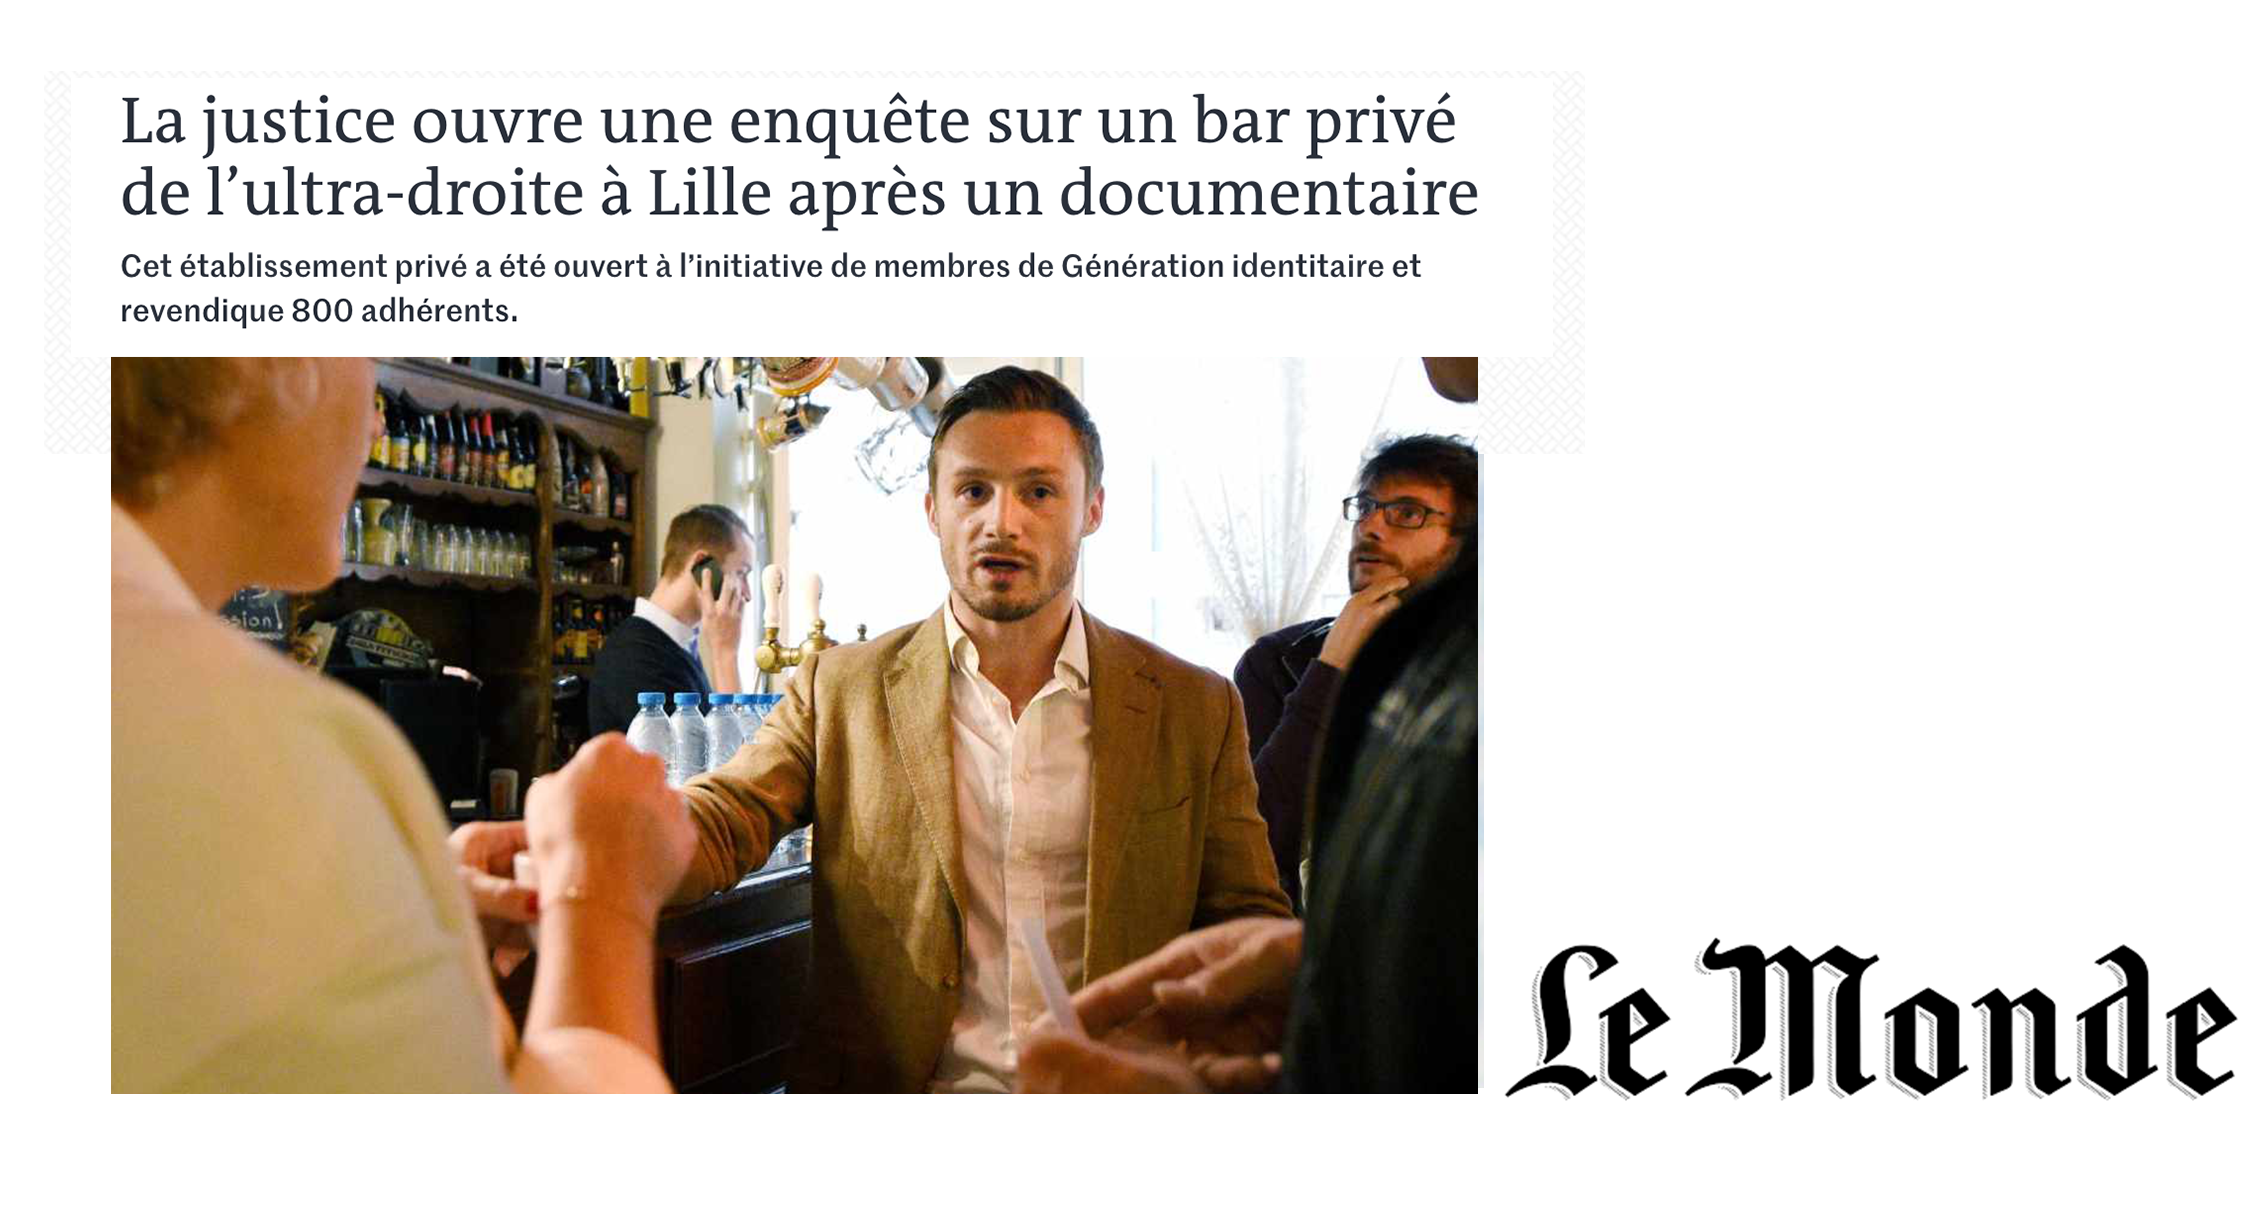 Le Monde: Prosecutors open investigation into far-right bar